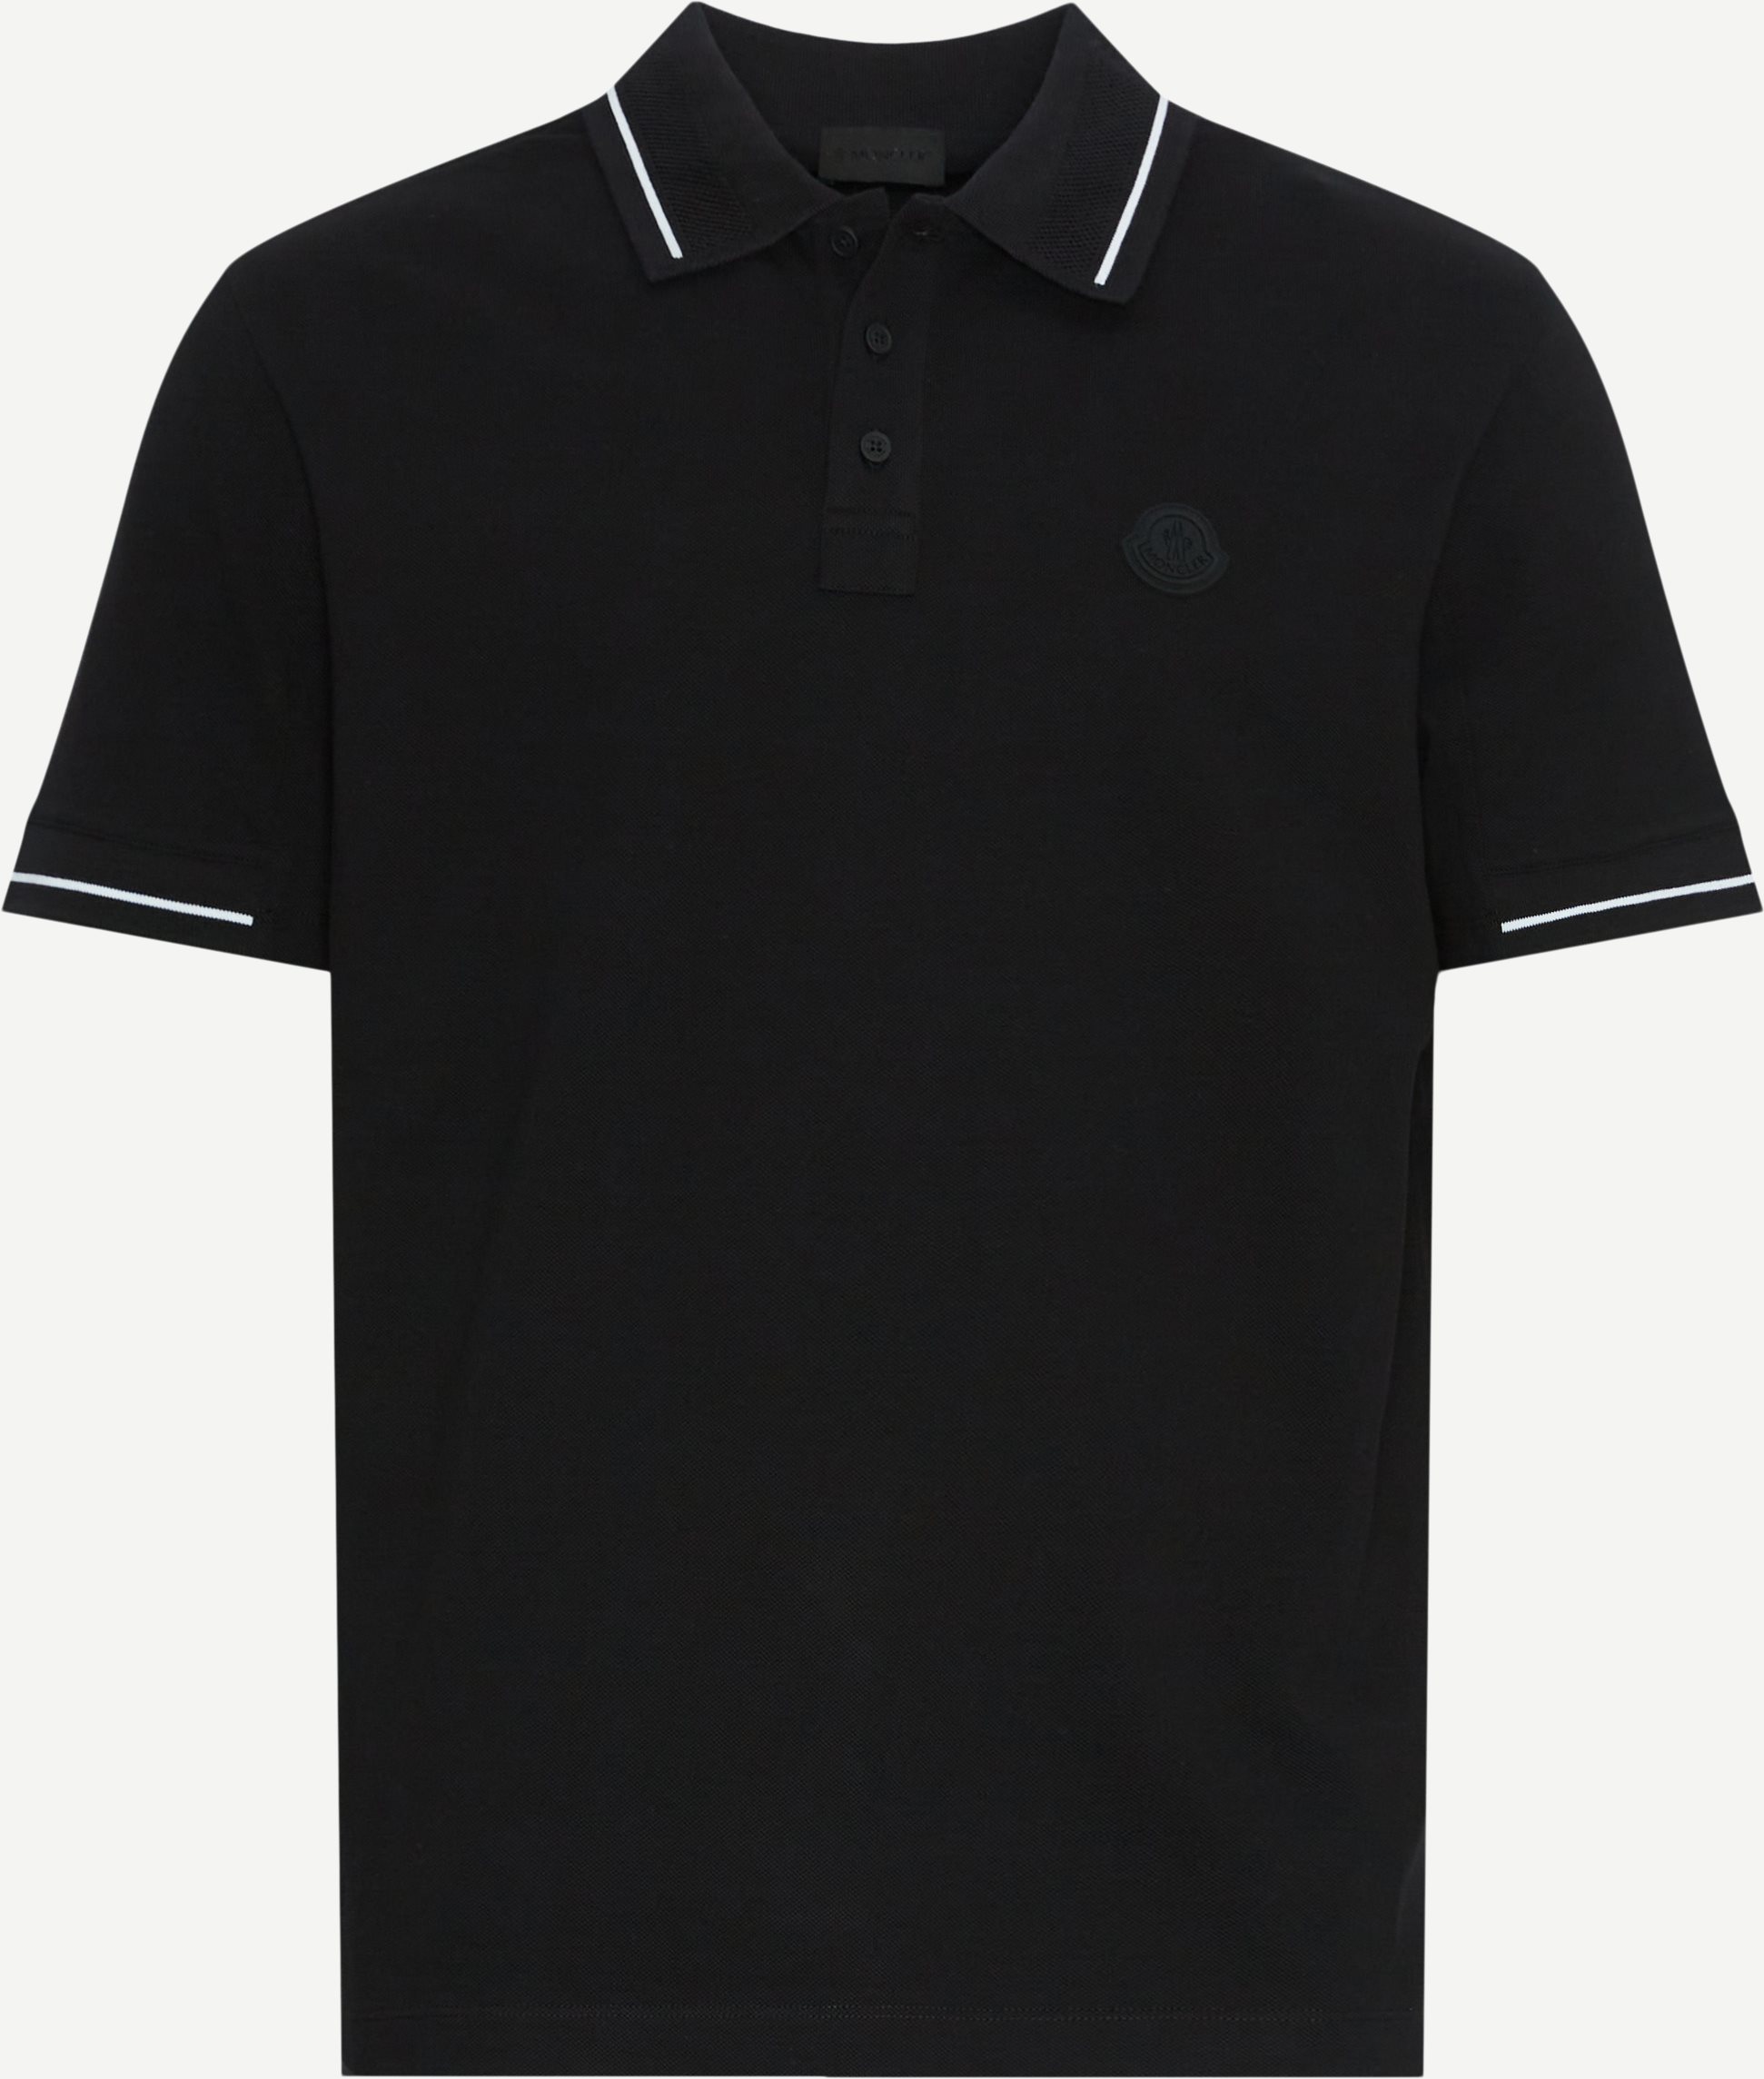 Moncler T-shirts 8A00001 89A16 Black